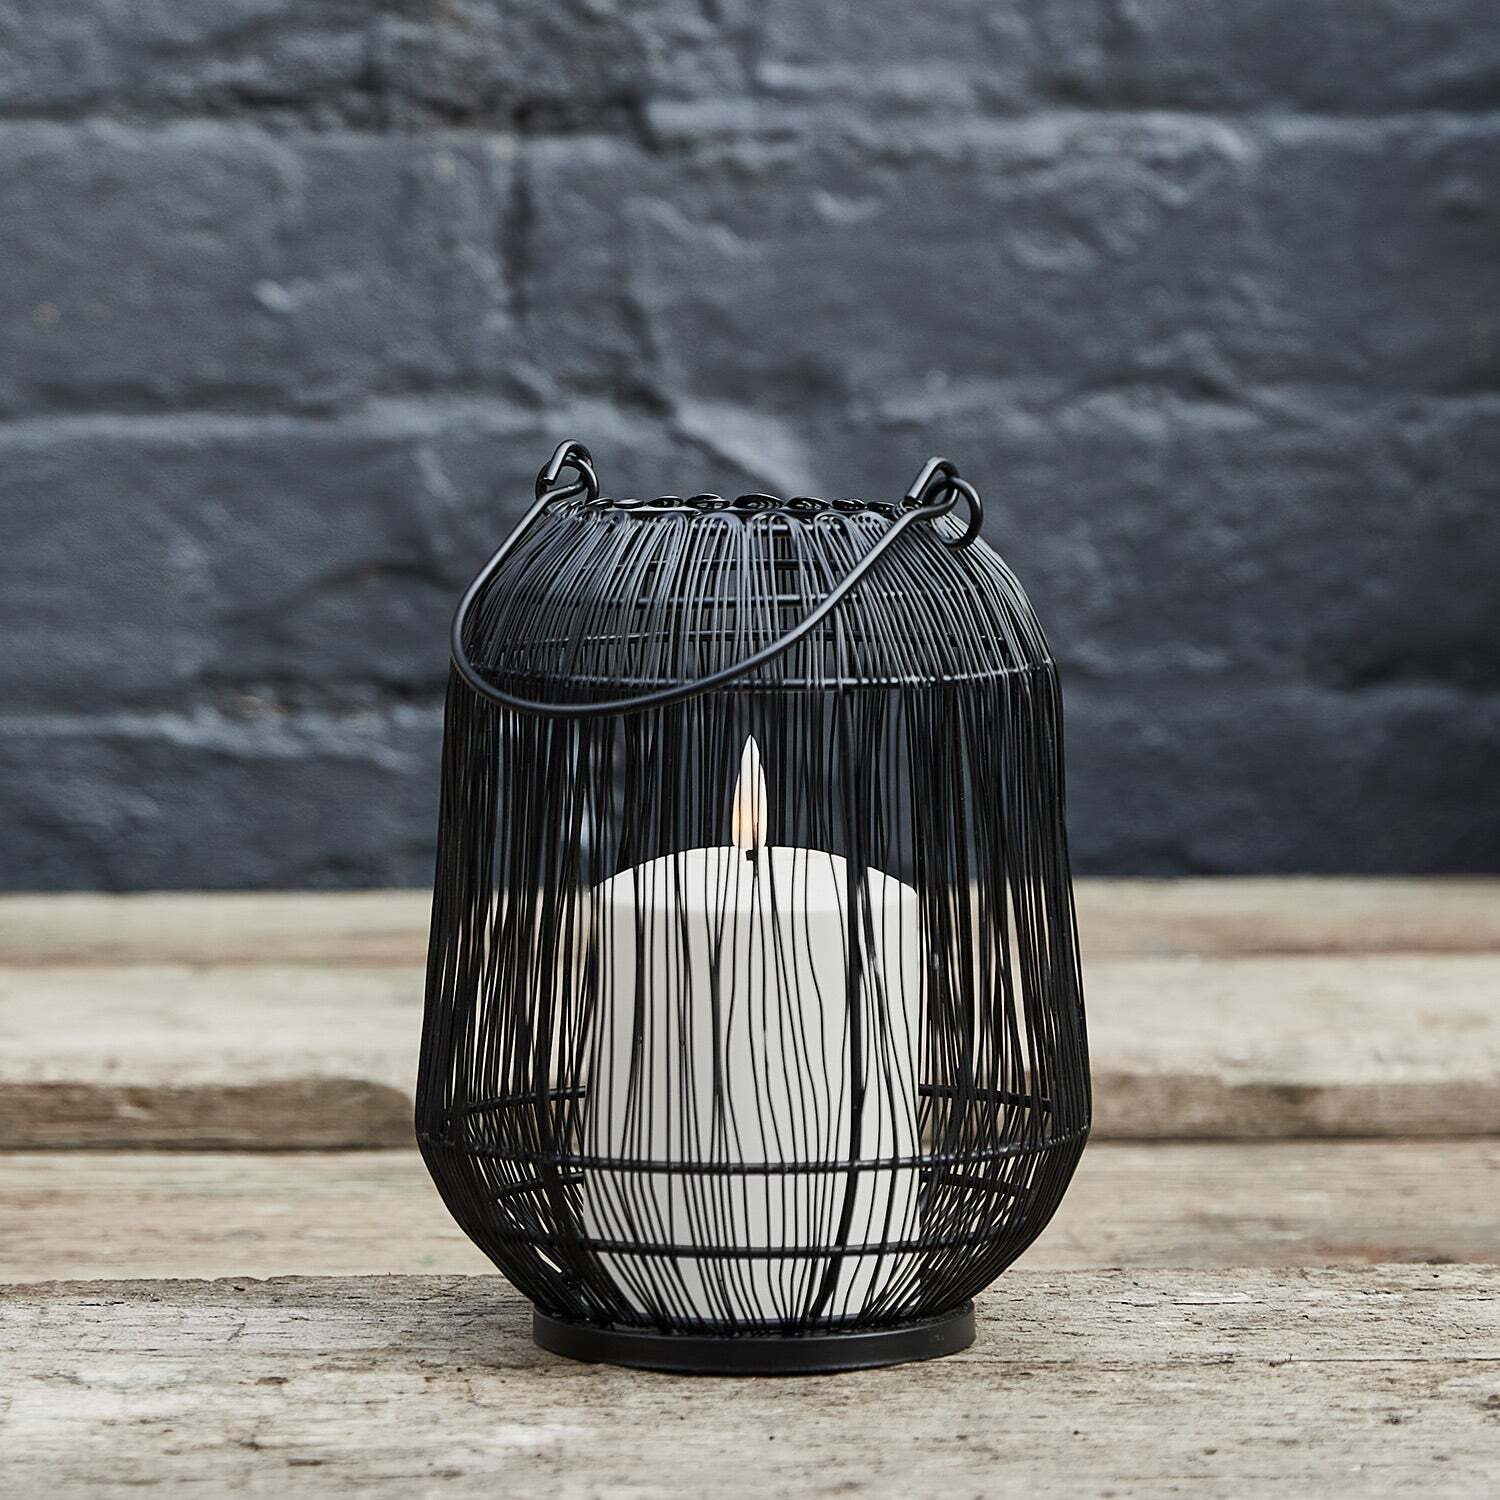 Antonio Black Garden Lantern with White TruGlow® Candle - image 1